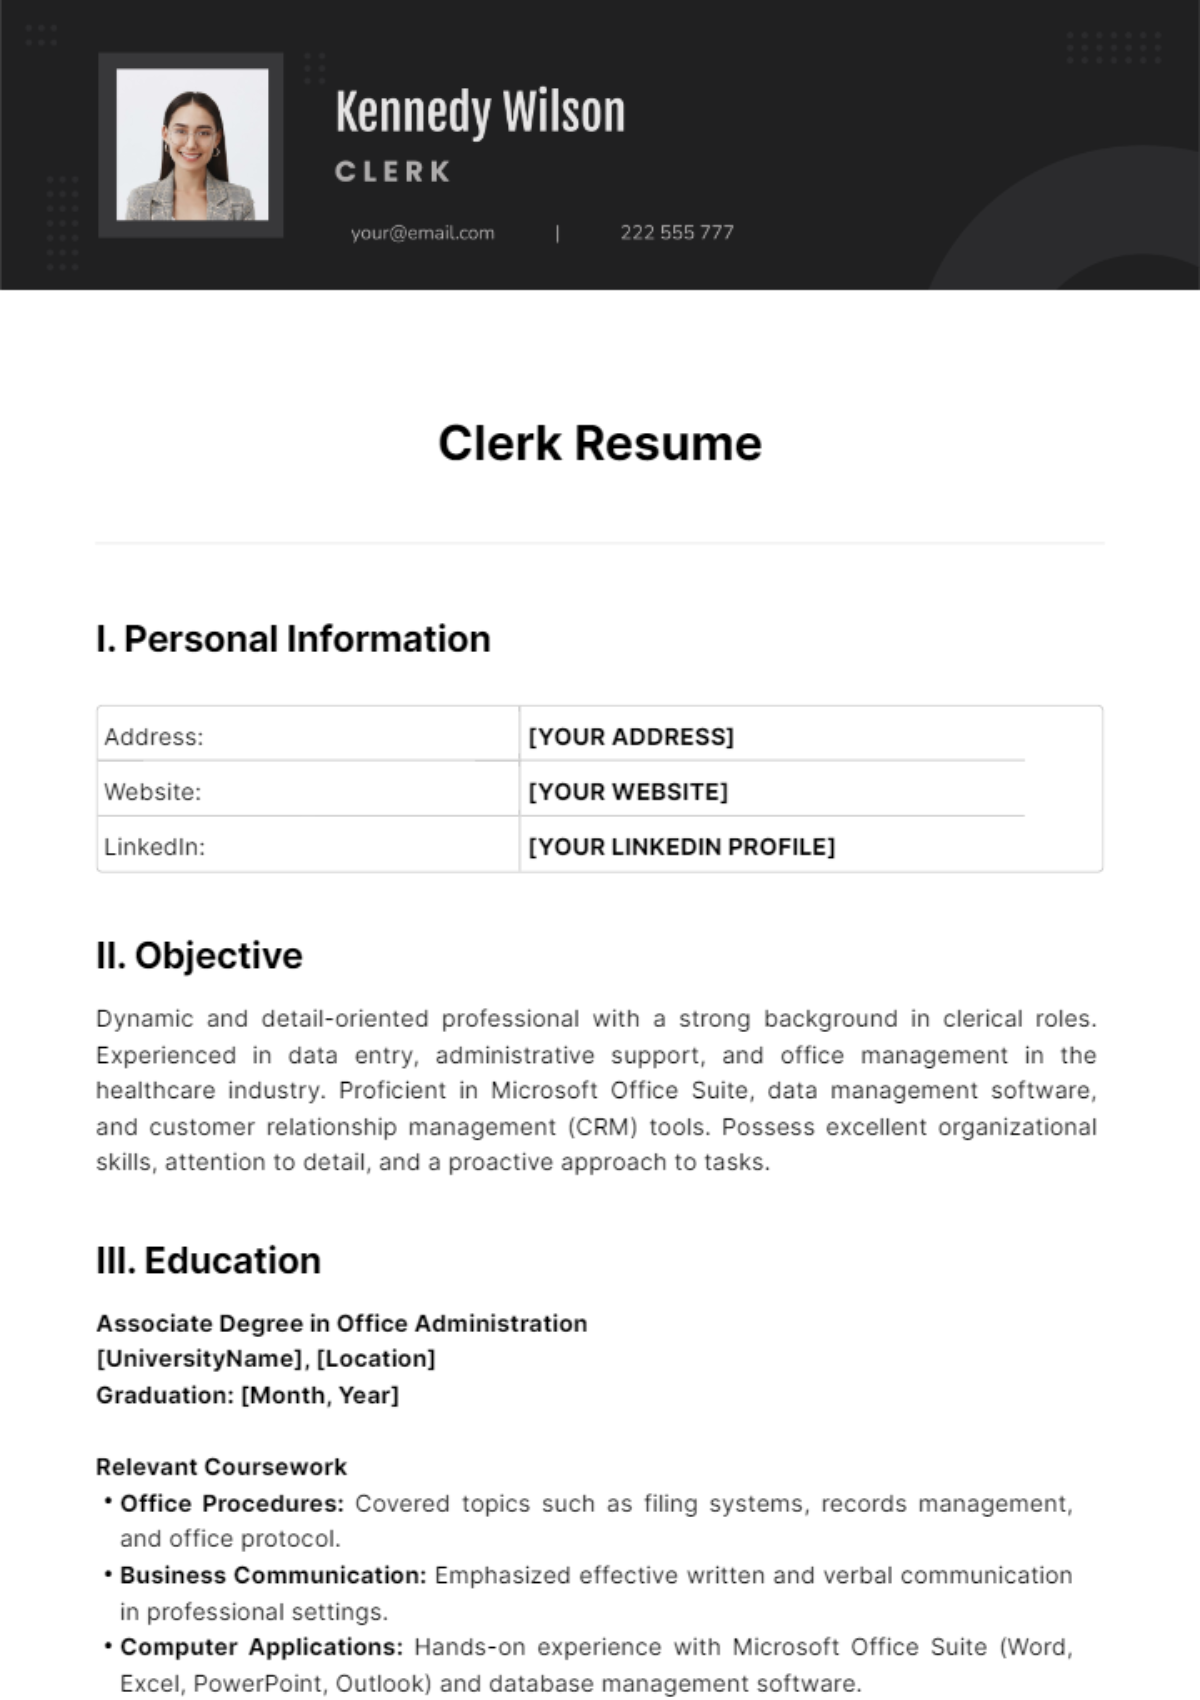 Clerk Resume Template